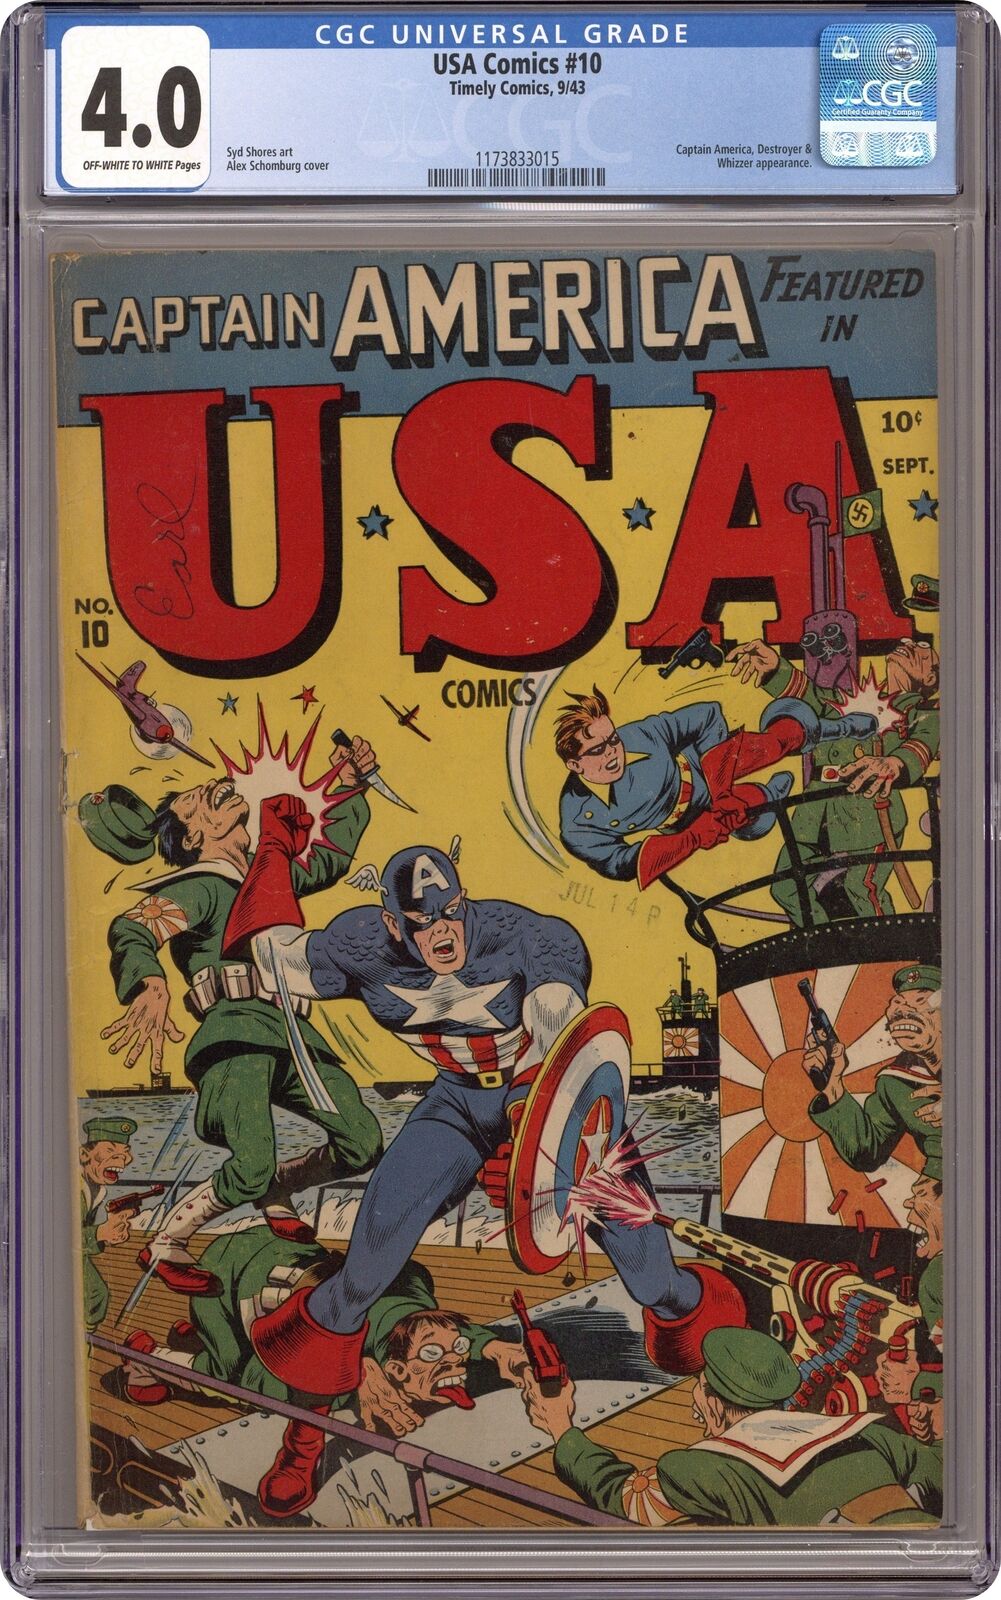 USA Comics #10 CGC 4.0 1943 1173833015